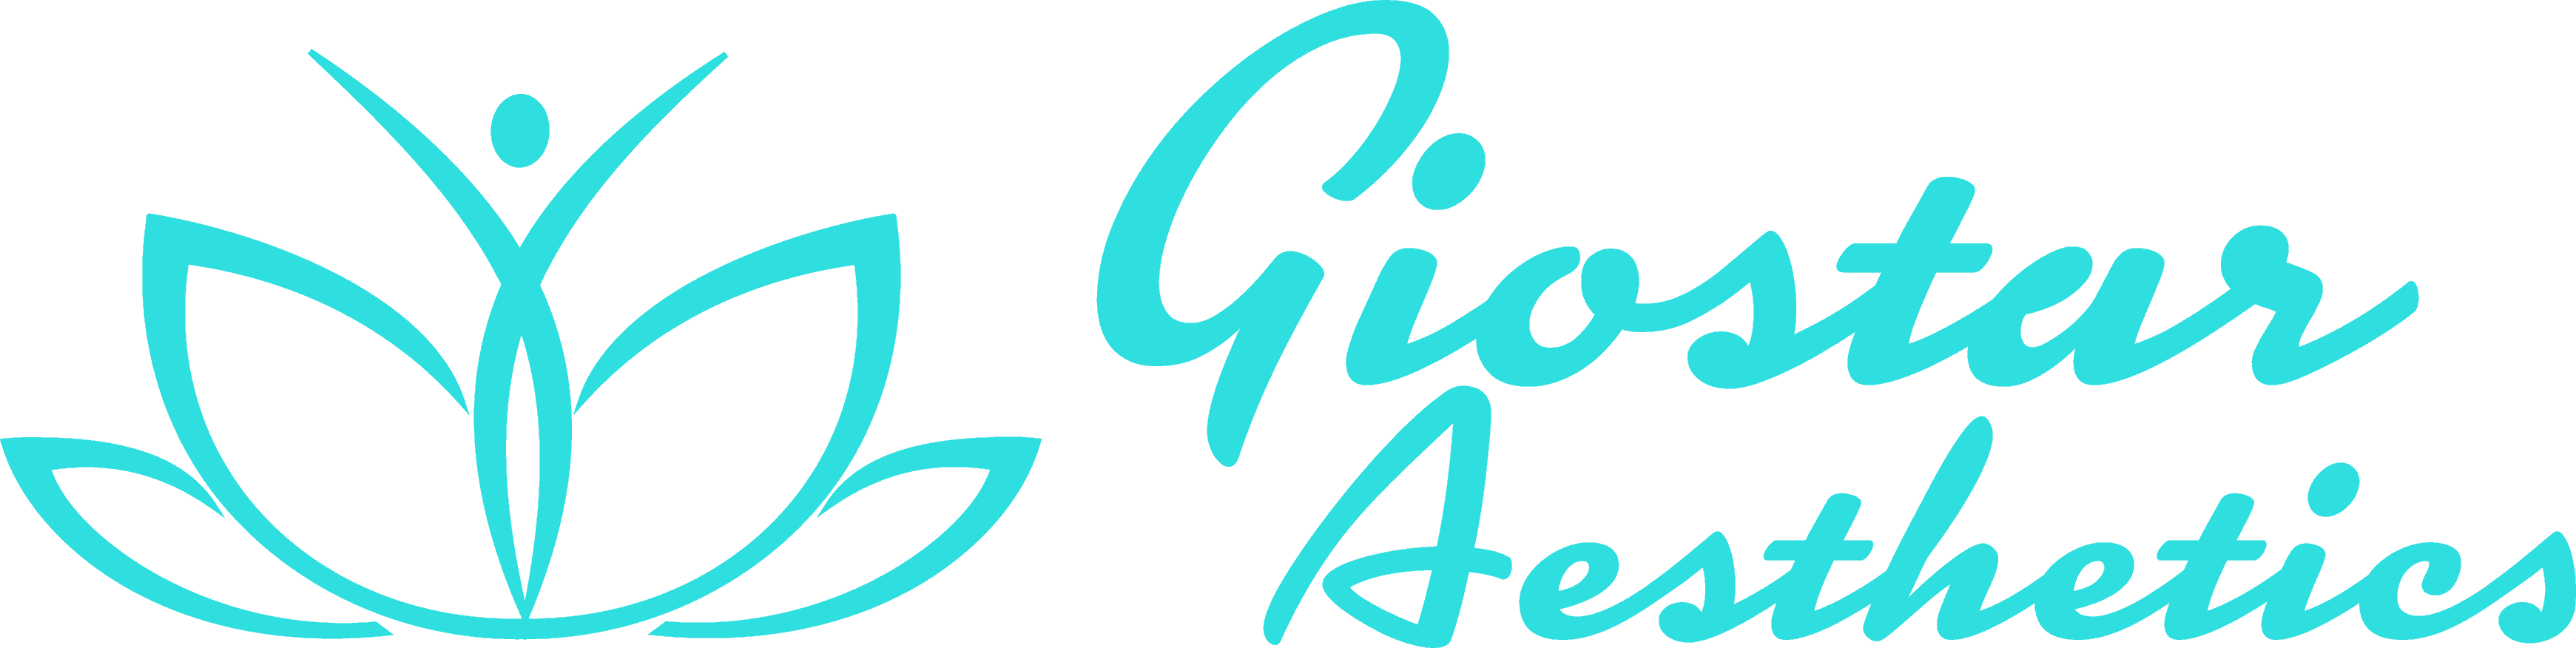 Giostar Logo